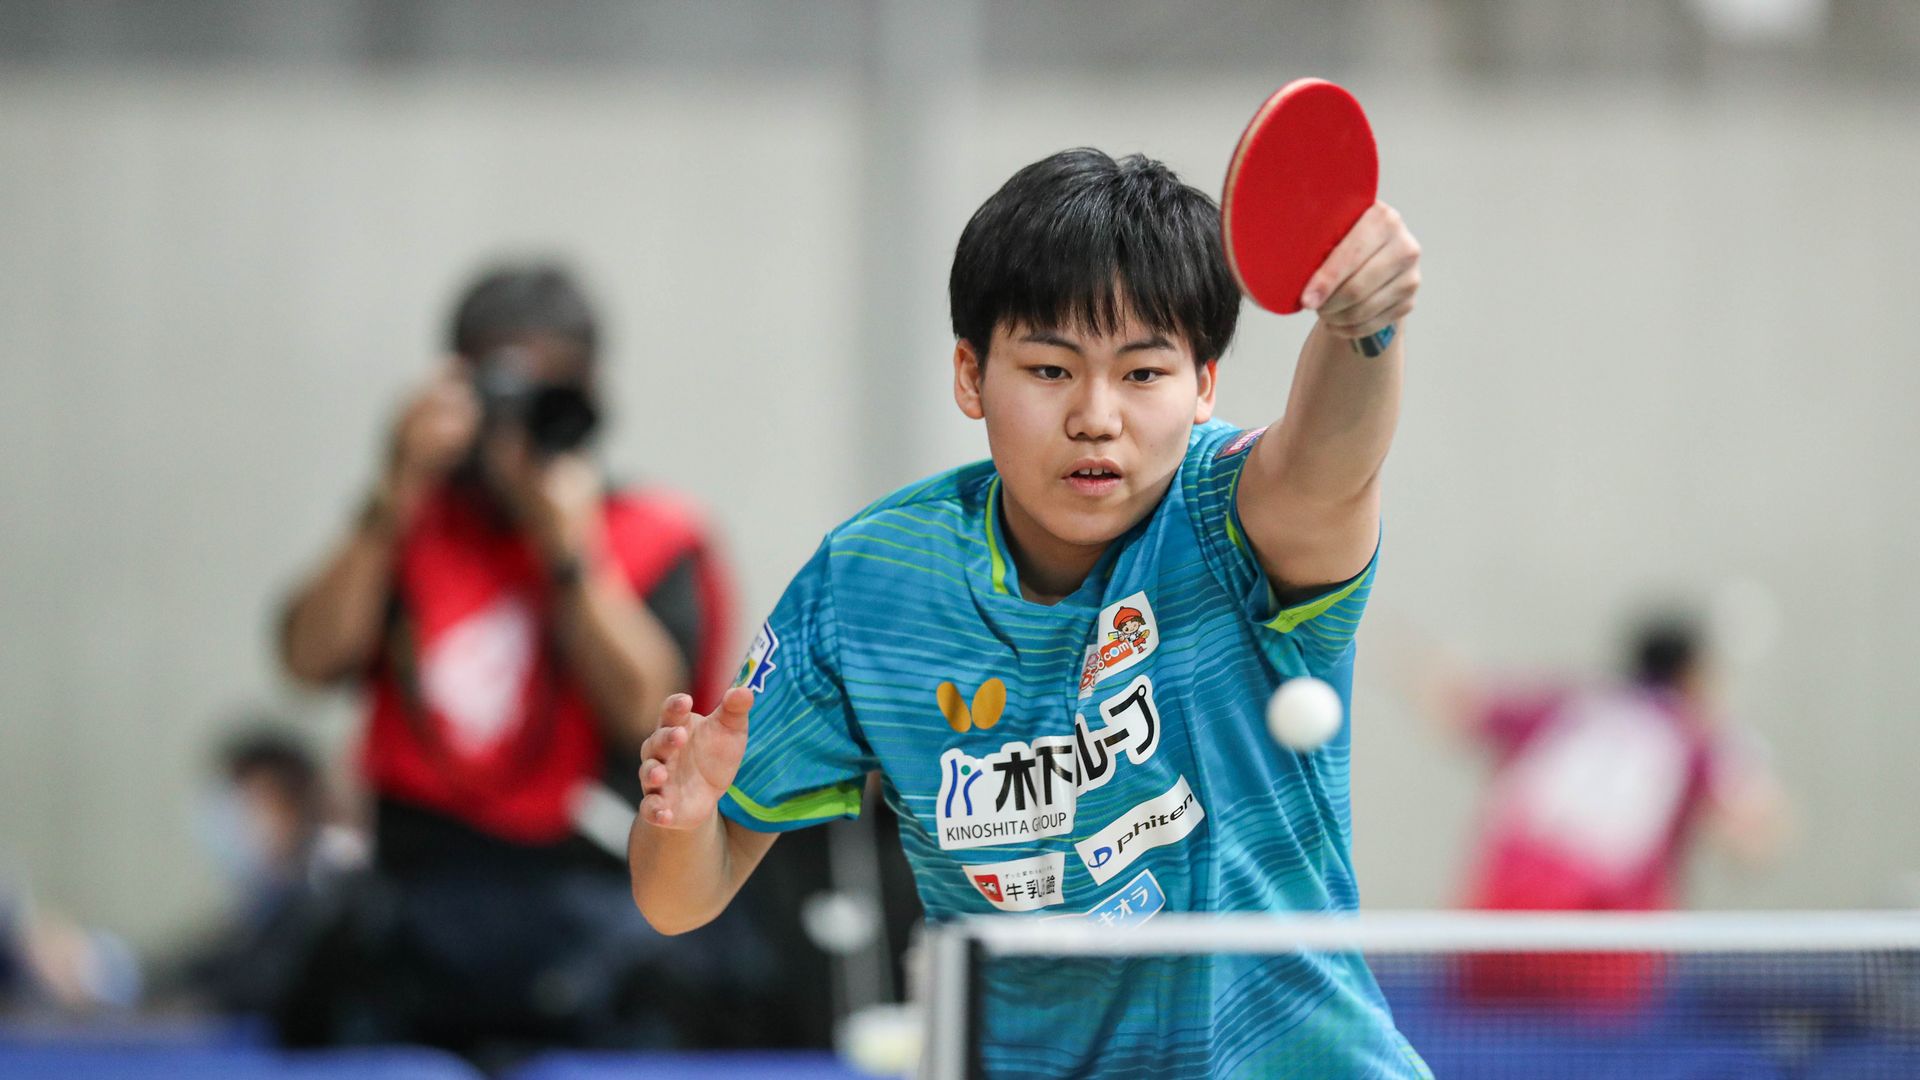 【全日本卓球】ジュニア男子3回戦で松島輝空がストレート勝利